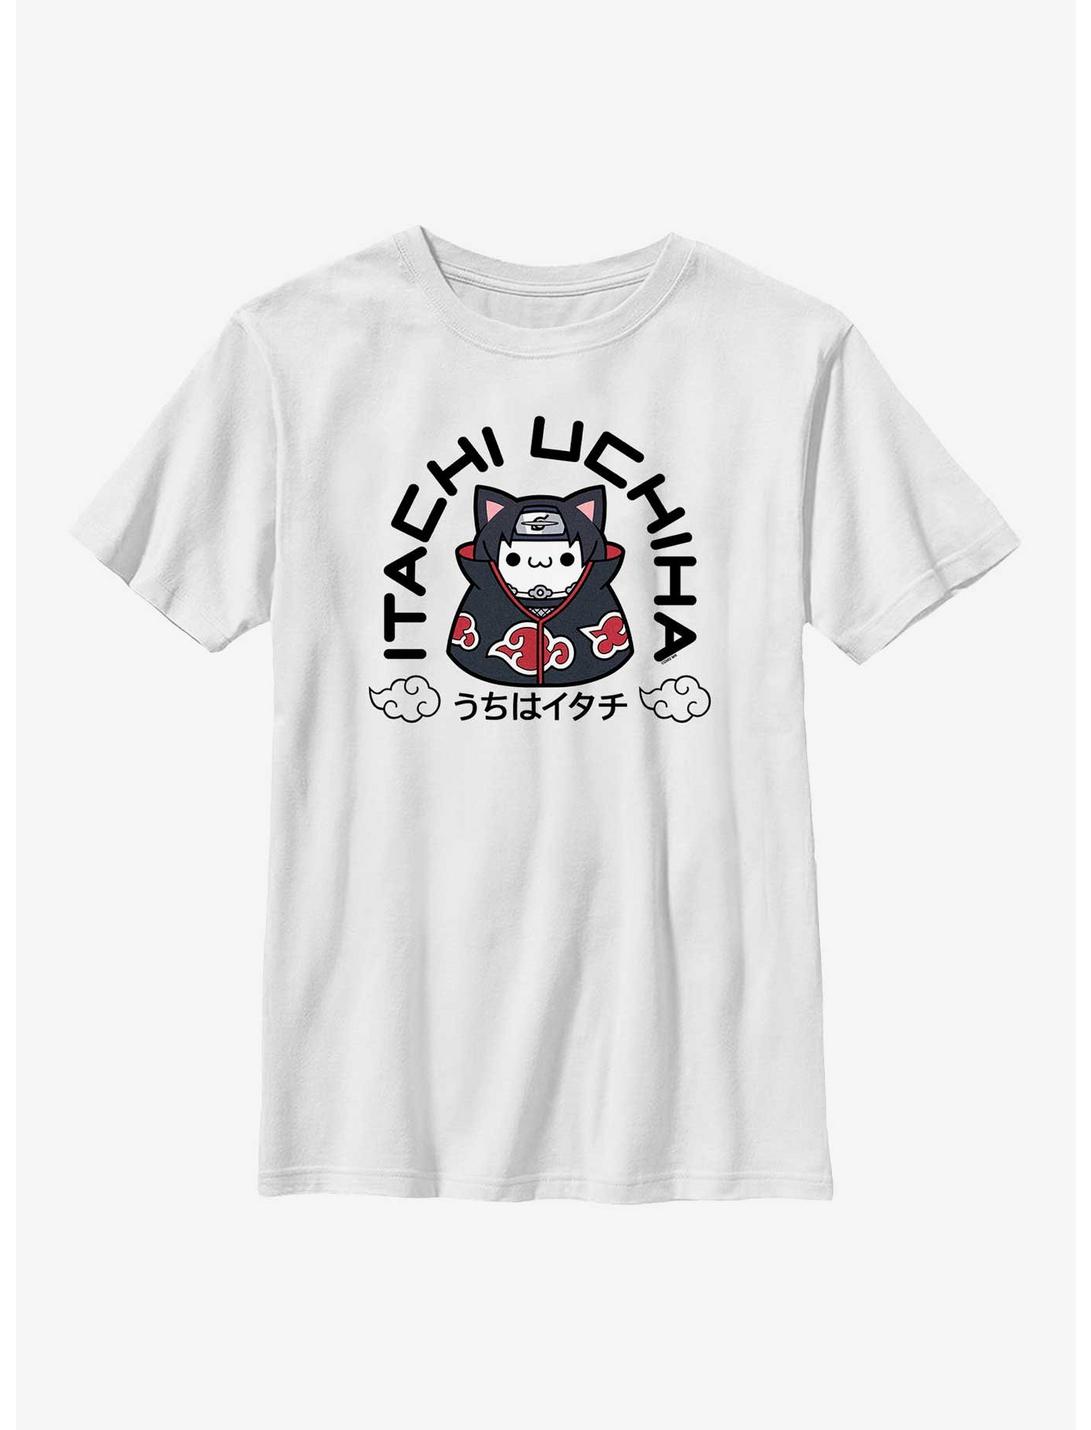 Naruto Itachi Uchiha Cat Youth T-Shirt, WHITE, hi-res